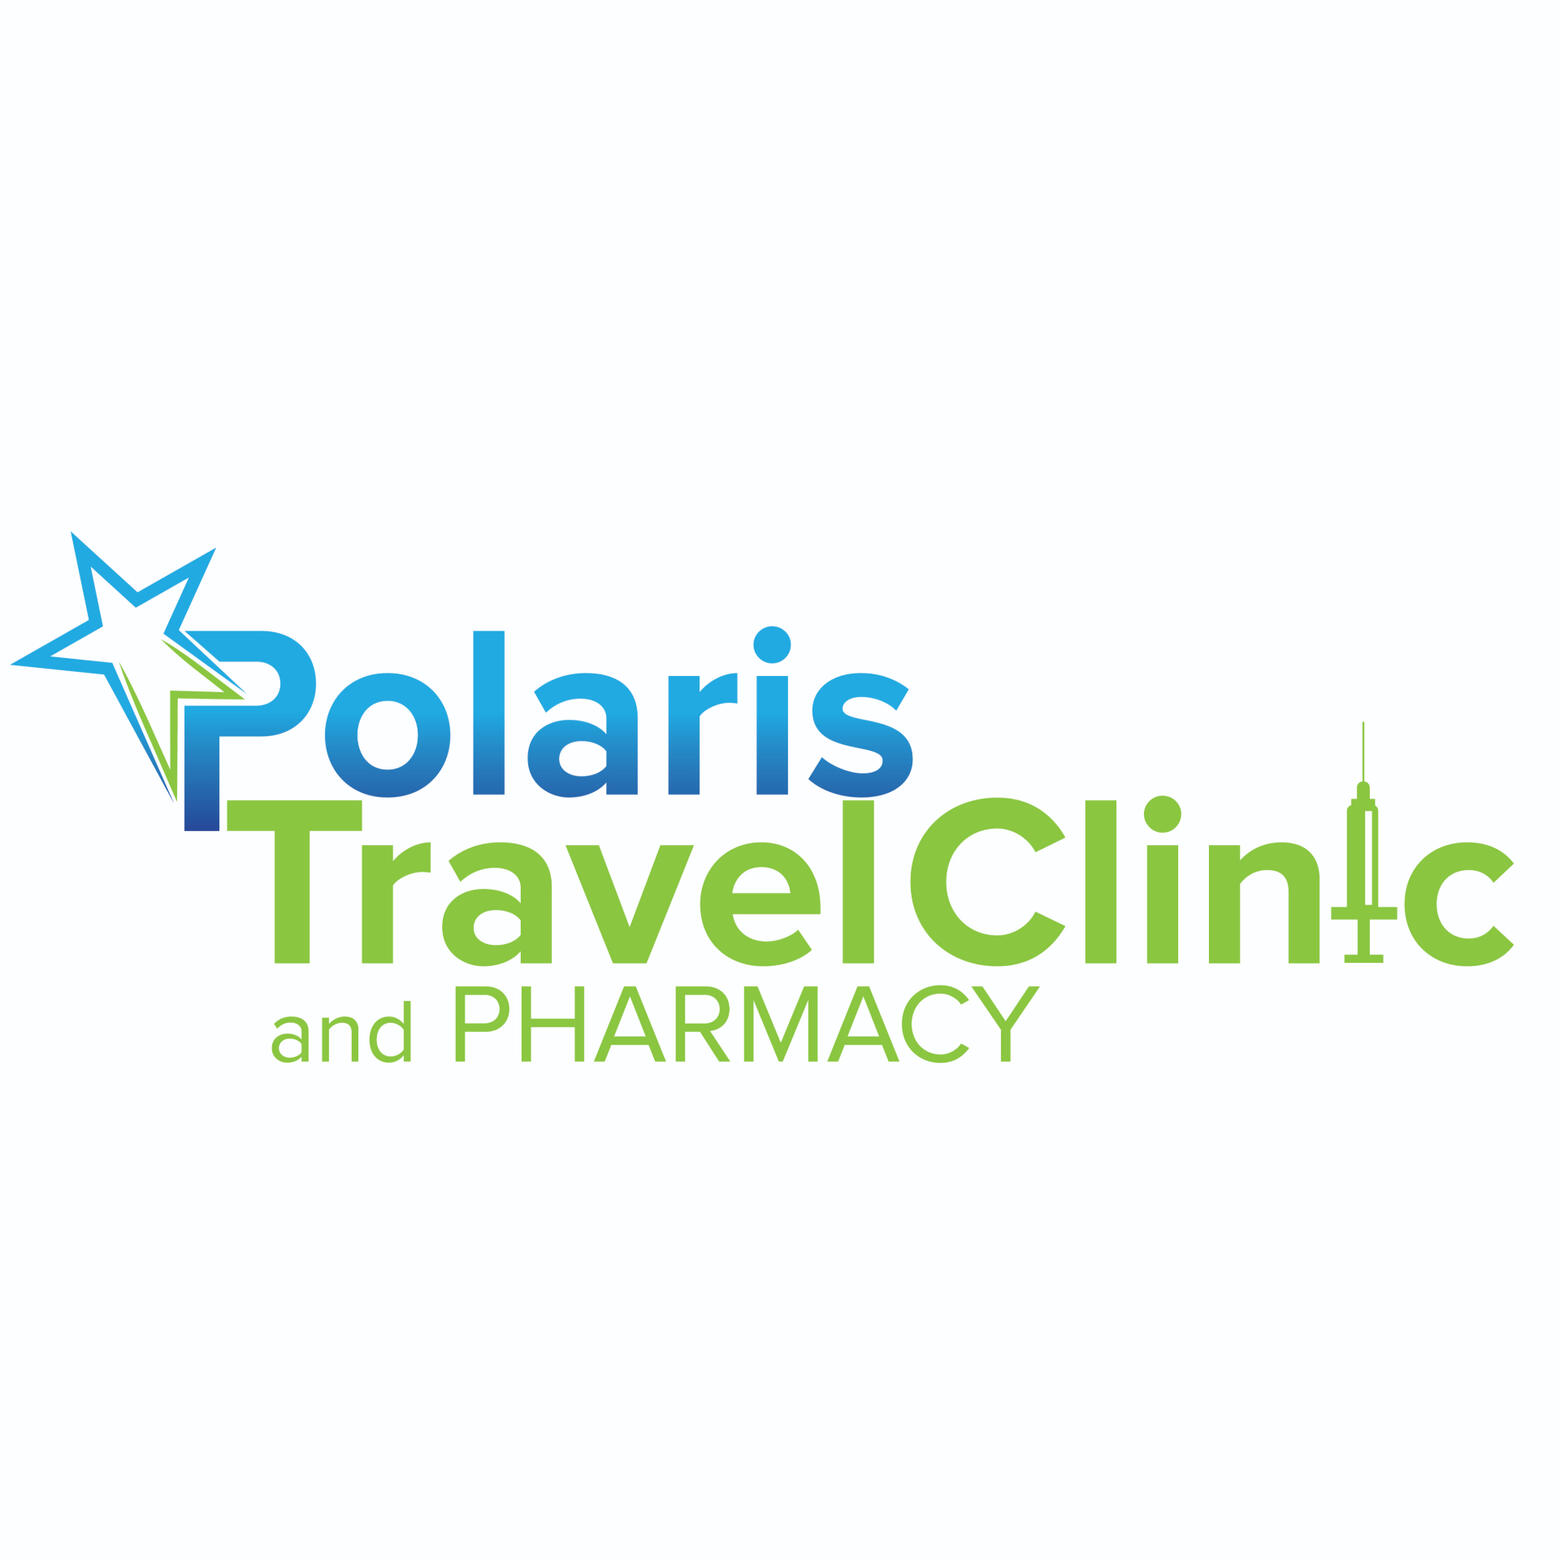 Polaris Travel Clinic and Pharmacy